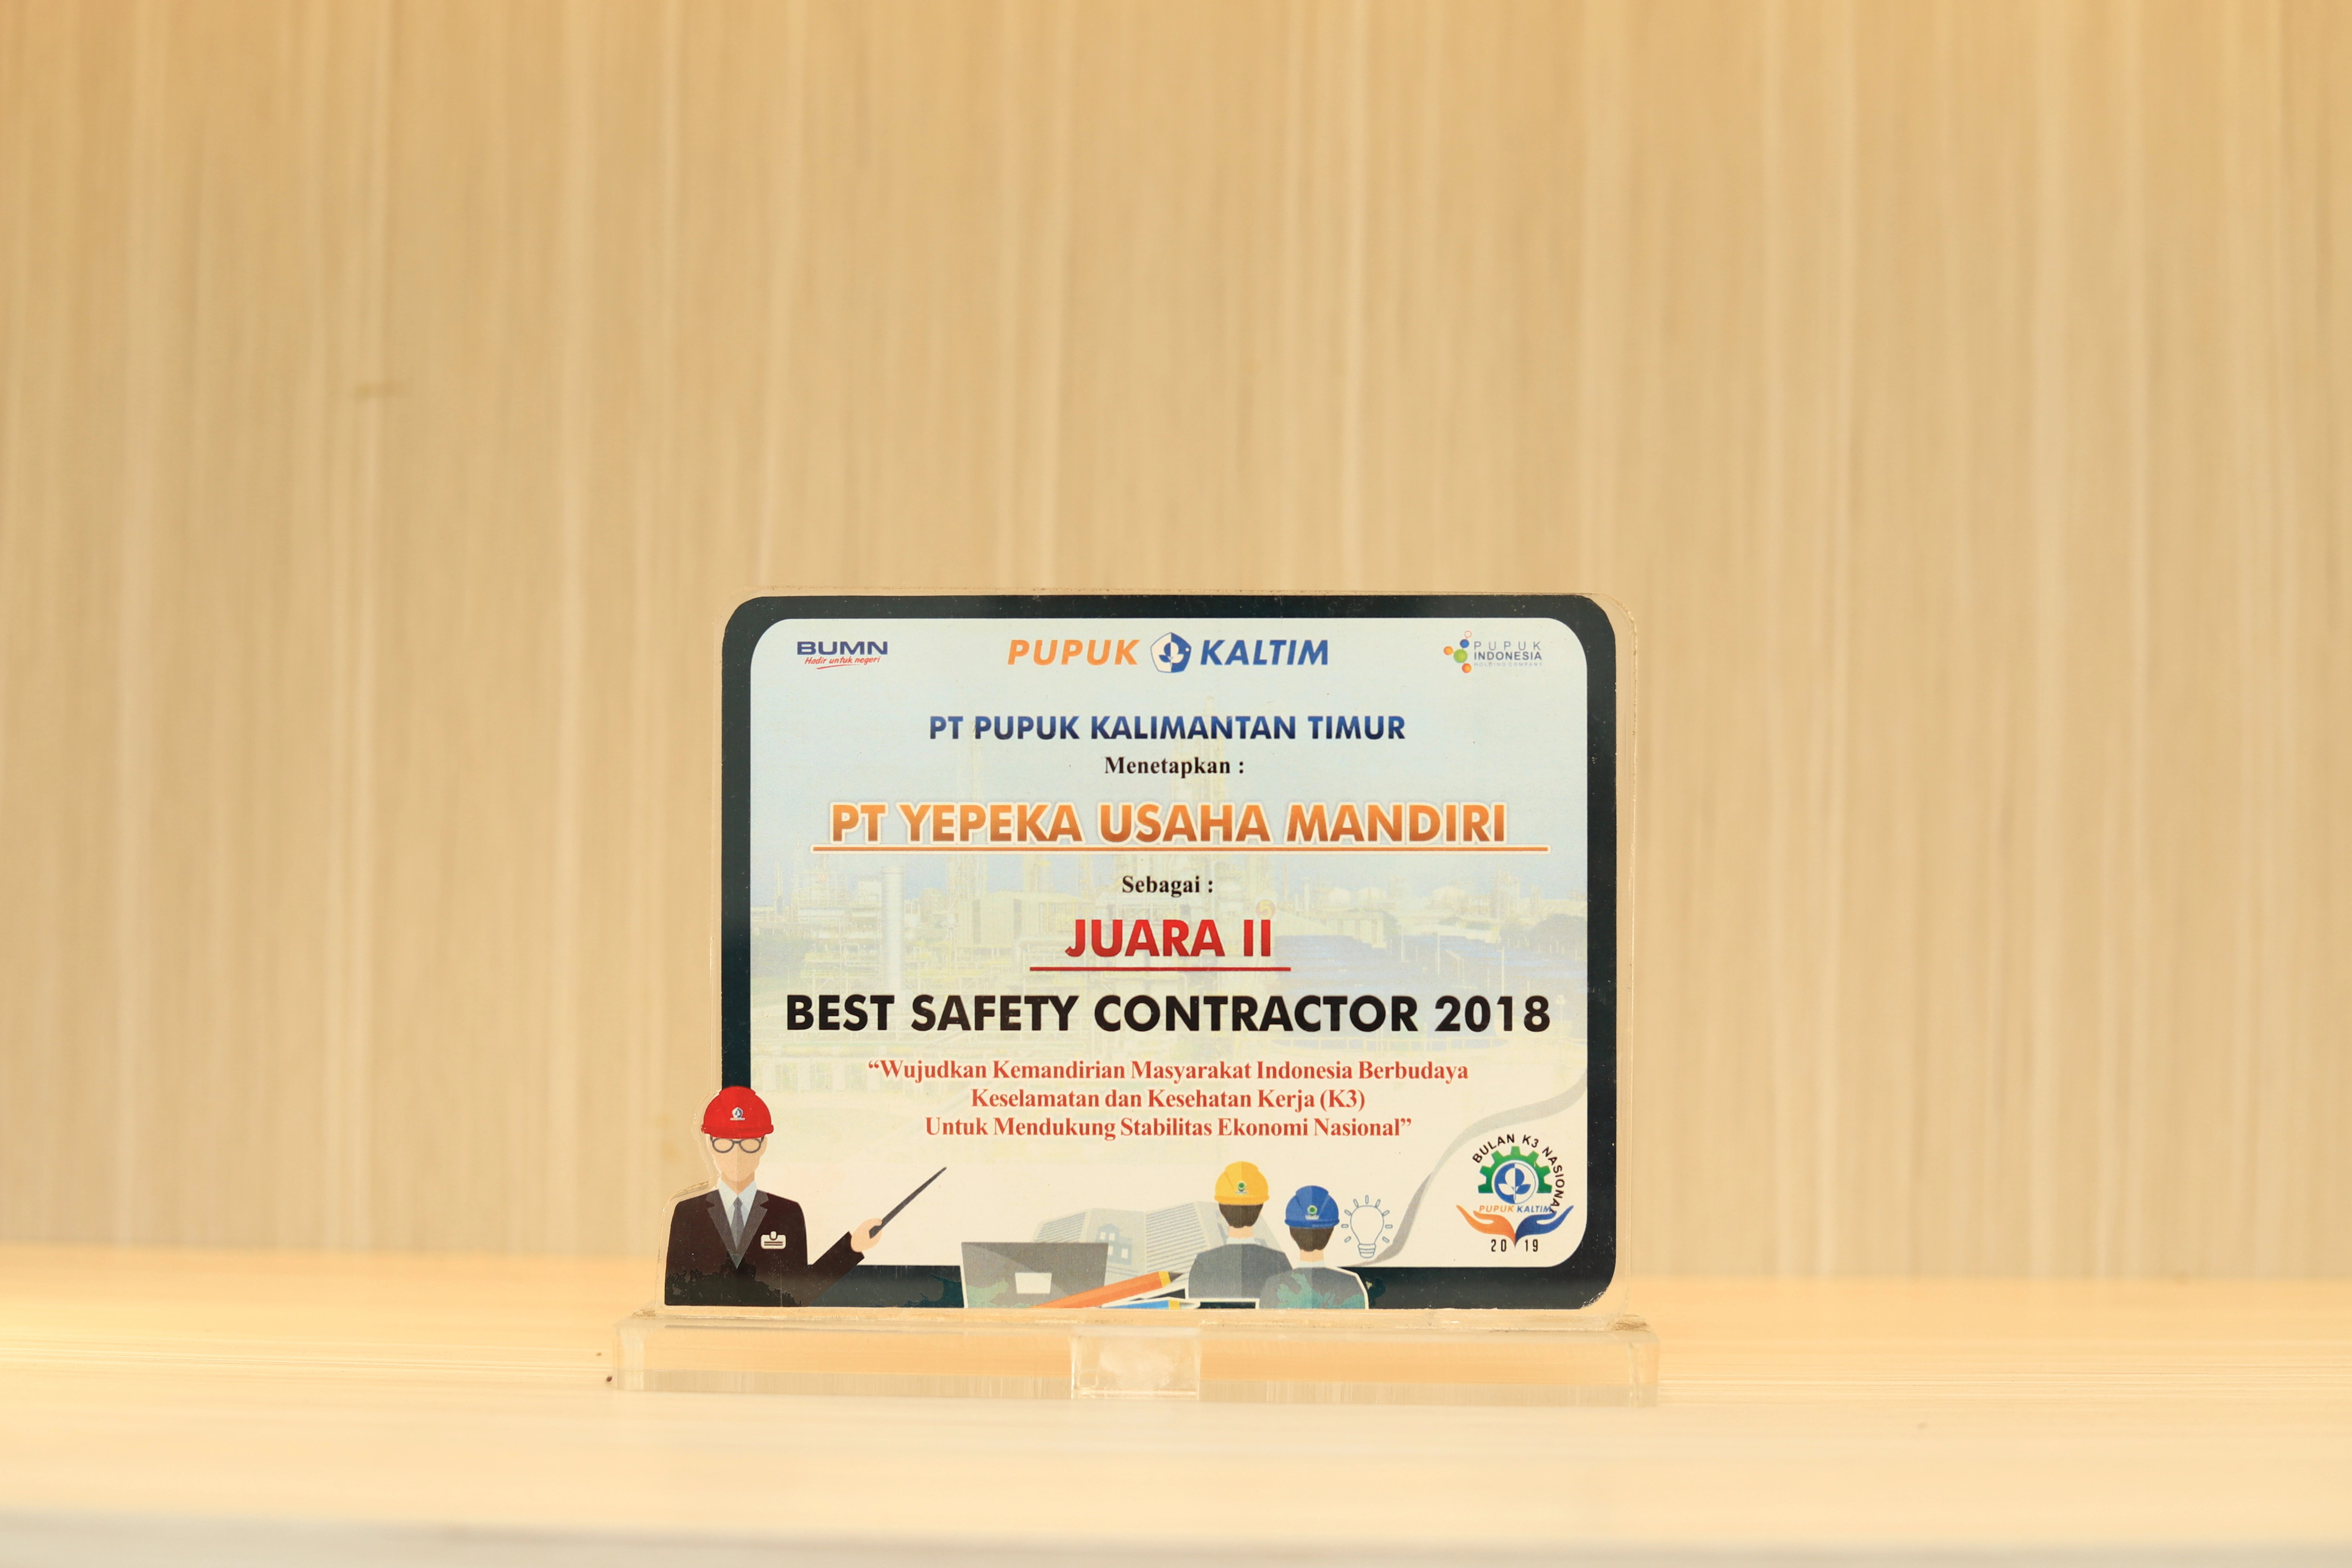 Penghargaan - Juara 2 Best Safety Contractor 2018